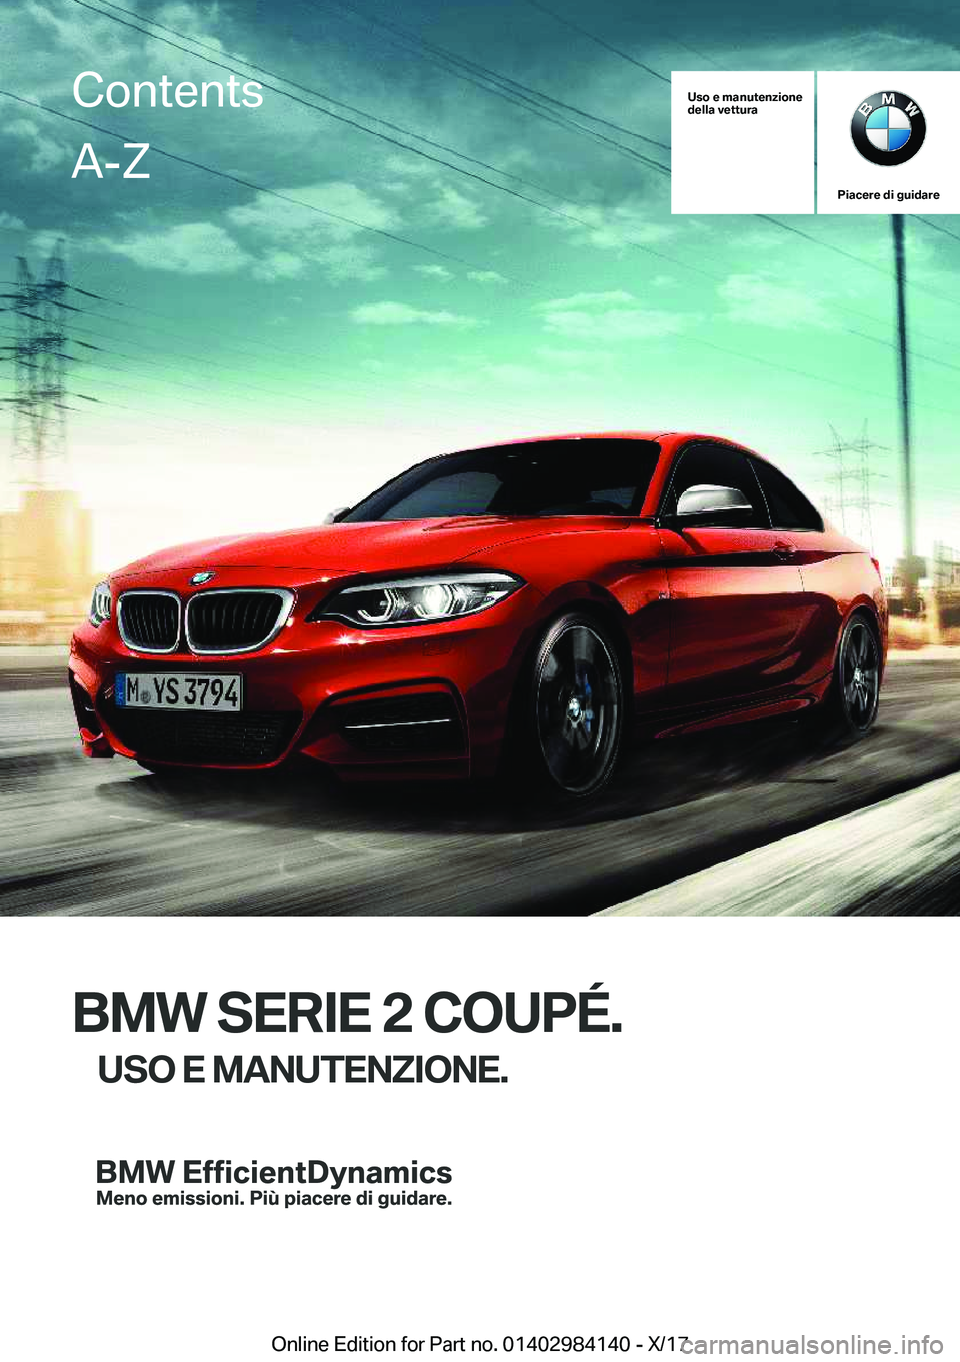 BMW 2 SERIES COUPE 2018  Libretti Di Uso E manutenzione (in Italian) �U�s�o��e��m�a�n�u�t�e�n�z�i�o�n�e
�d�e�l�l�a��v�e�t�t�u�r�a
�P�i�a�c�e�r�e��d�i��g�u�i�d�a�r�e
�B�M�W��S�E�R�I�E��2��C�O�U�P�